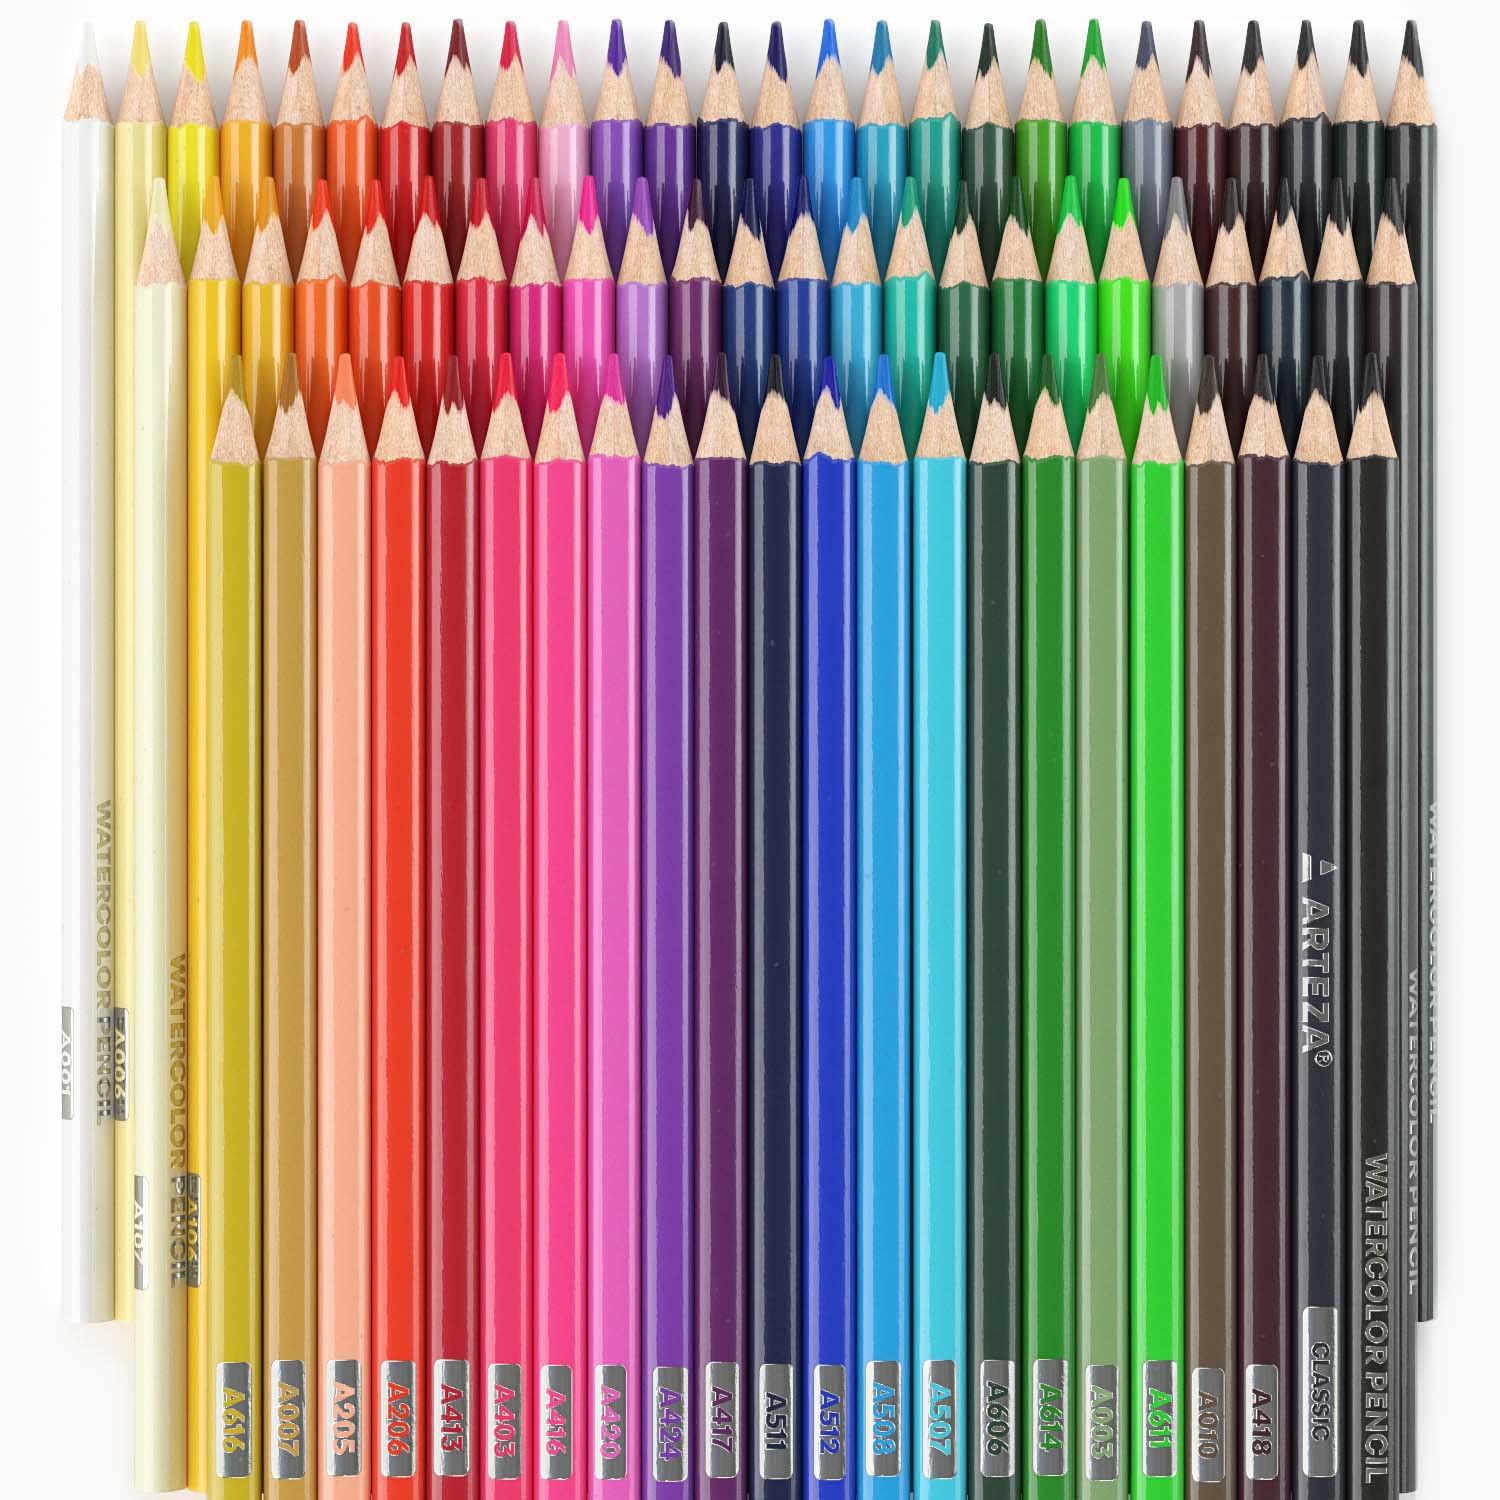 Arteza Professional Watercolor Pencils (Set of 72)